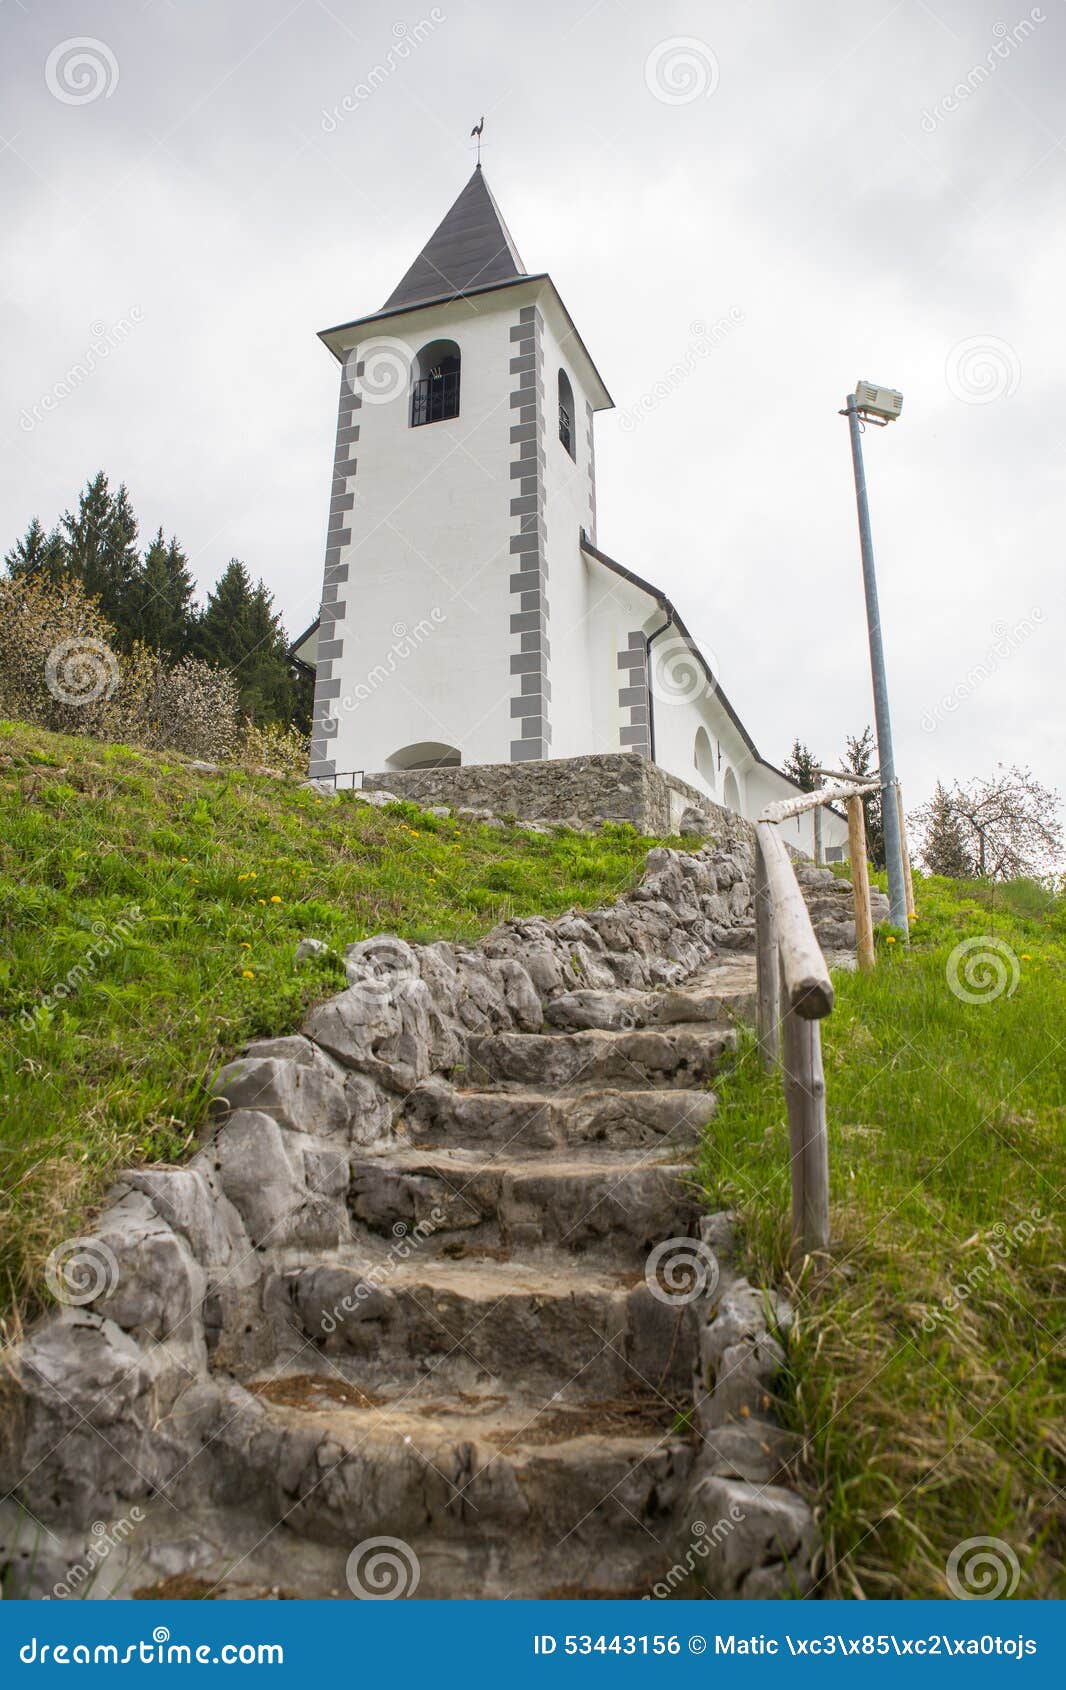 saint vid church, slovenia